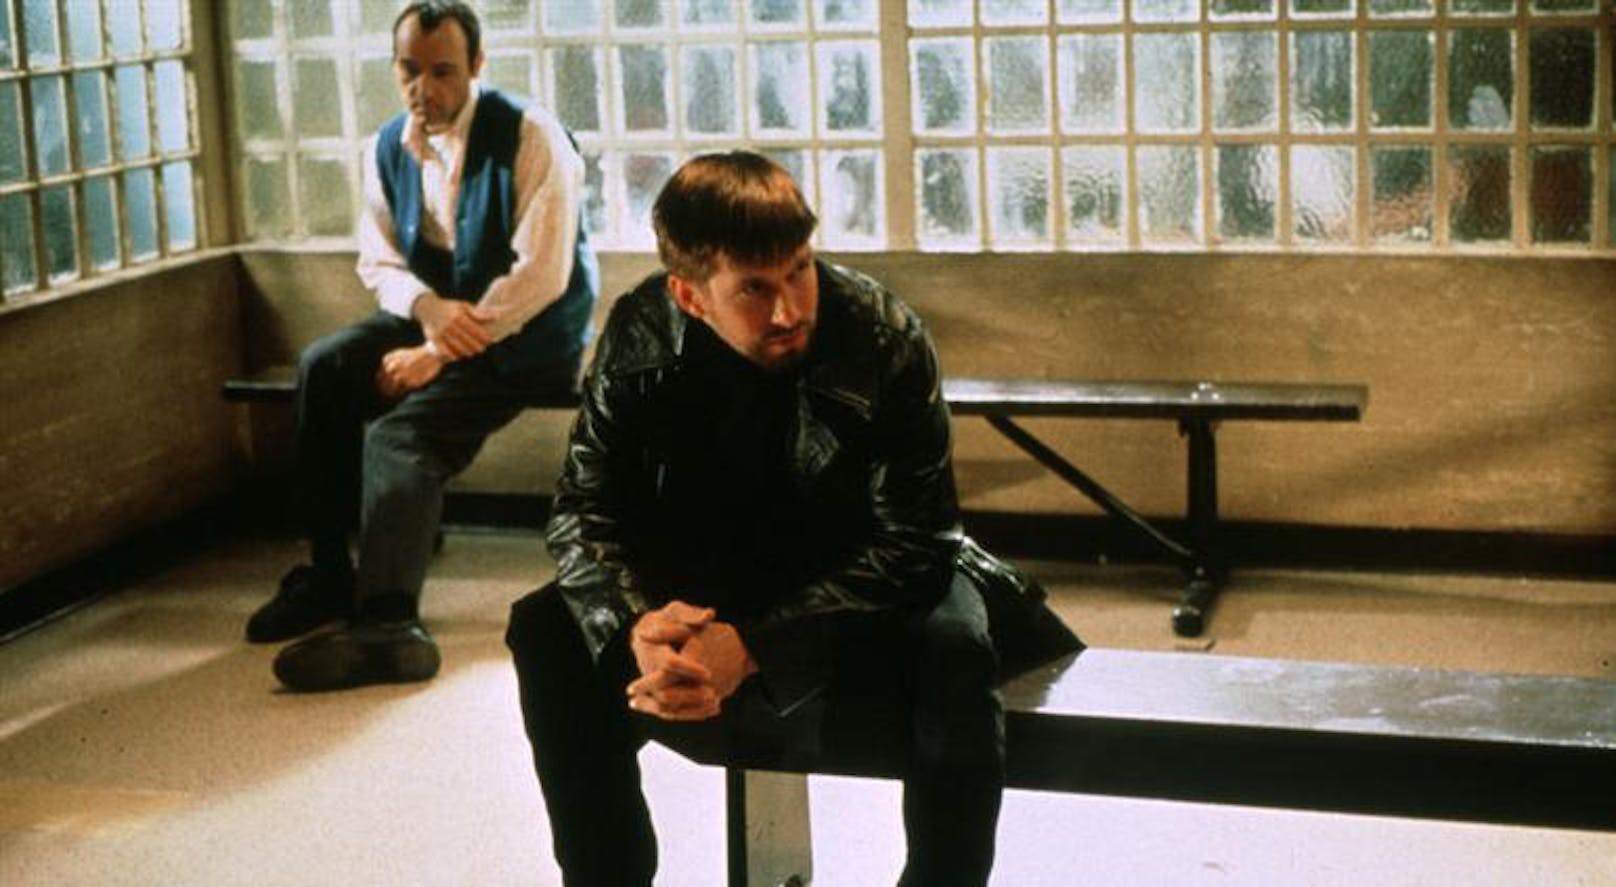 1996 siegte "Die üblichen Verdächtigen" in zwei Kategorien: Bester Nebendarsteller (Kevin Spacey, im Bild links hinten), bestes Orginal-Drehbuch (Christopher McQuarrie).